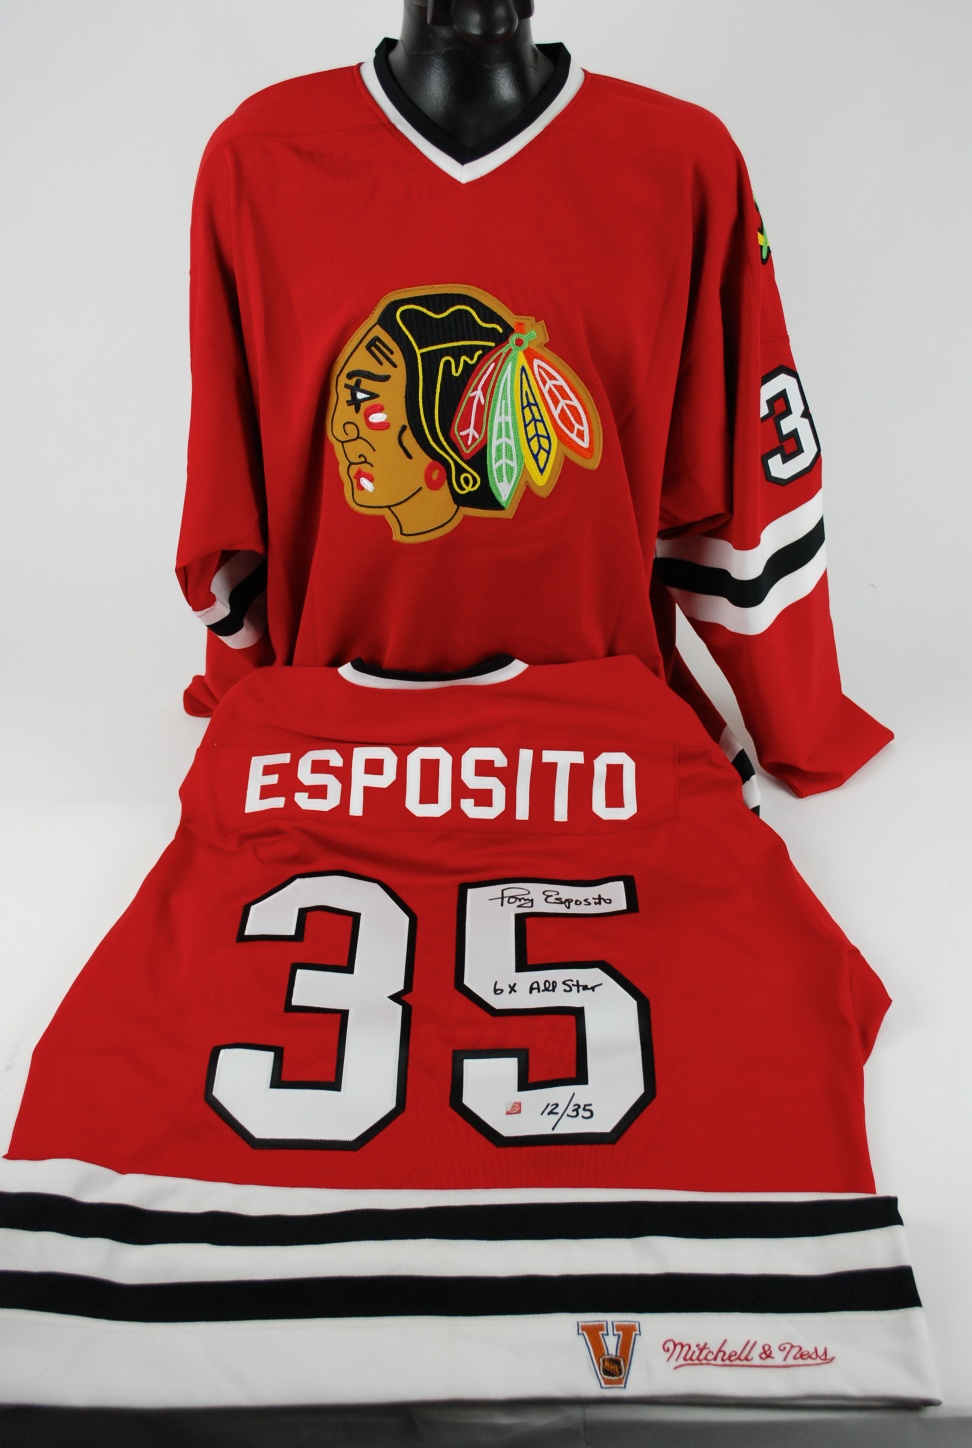 Tony Esposito Jersey, Chicago Blackhawks Tony Esposito NHL Jerseys